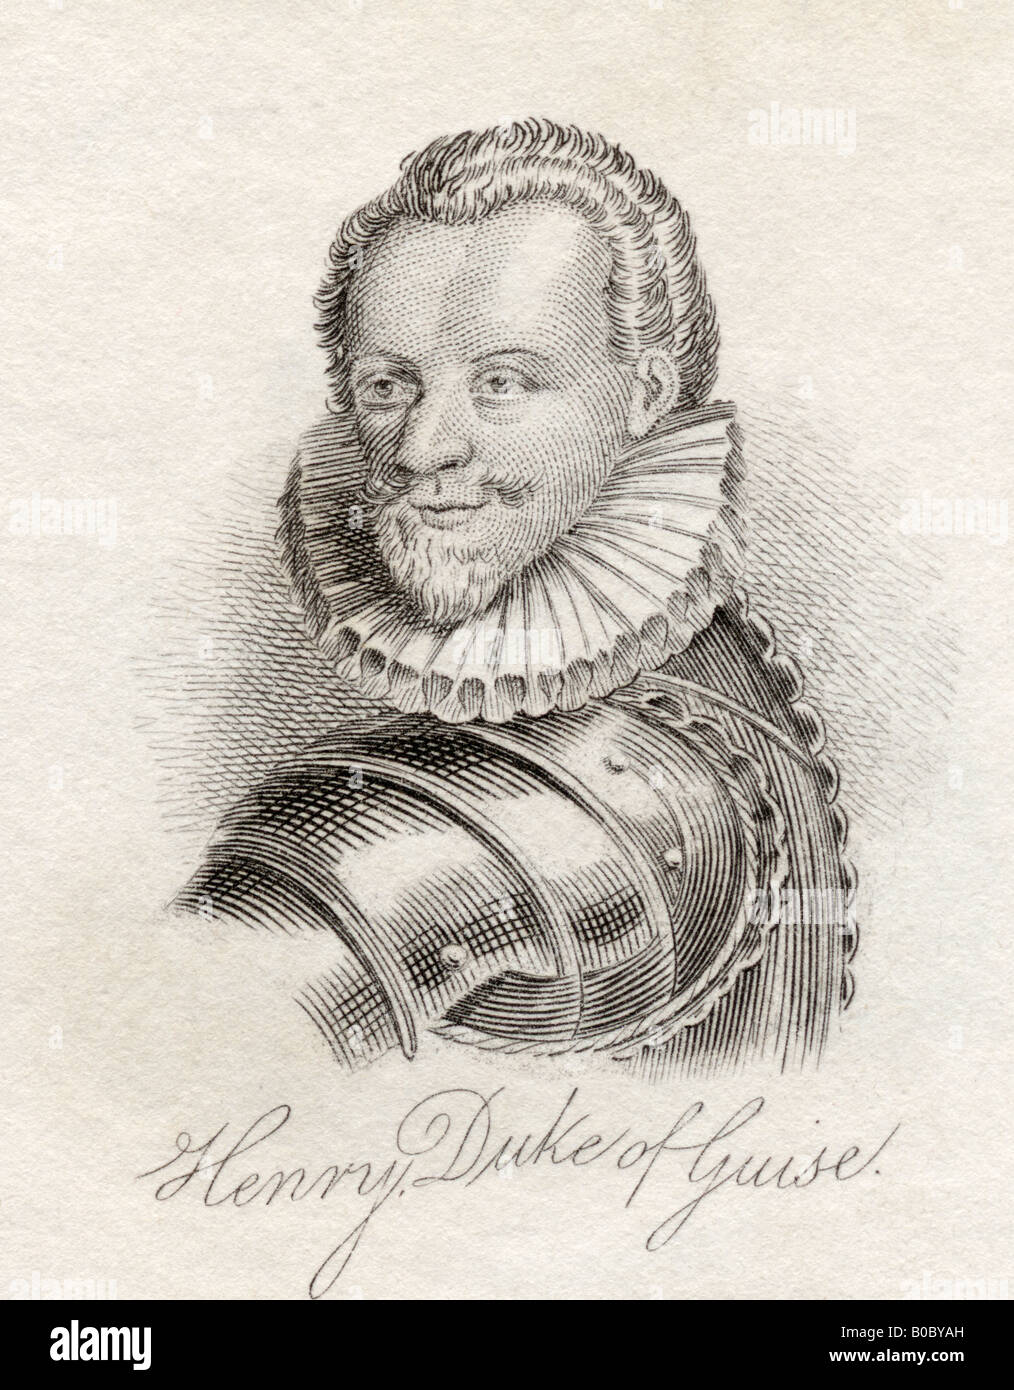 Henry I, prince de Joinville, duc de Guise, comte de l'UE, 1550 - 1588 alias le Balafre ou le cramoisi Banque D'Images